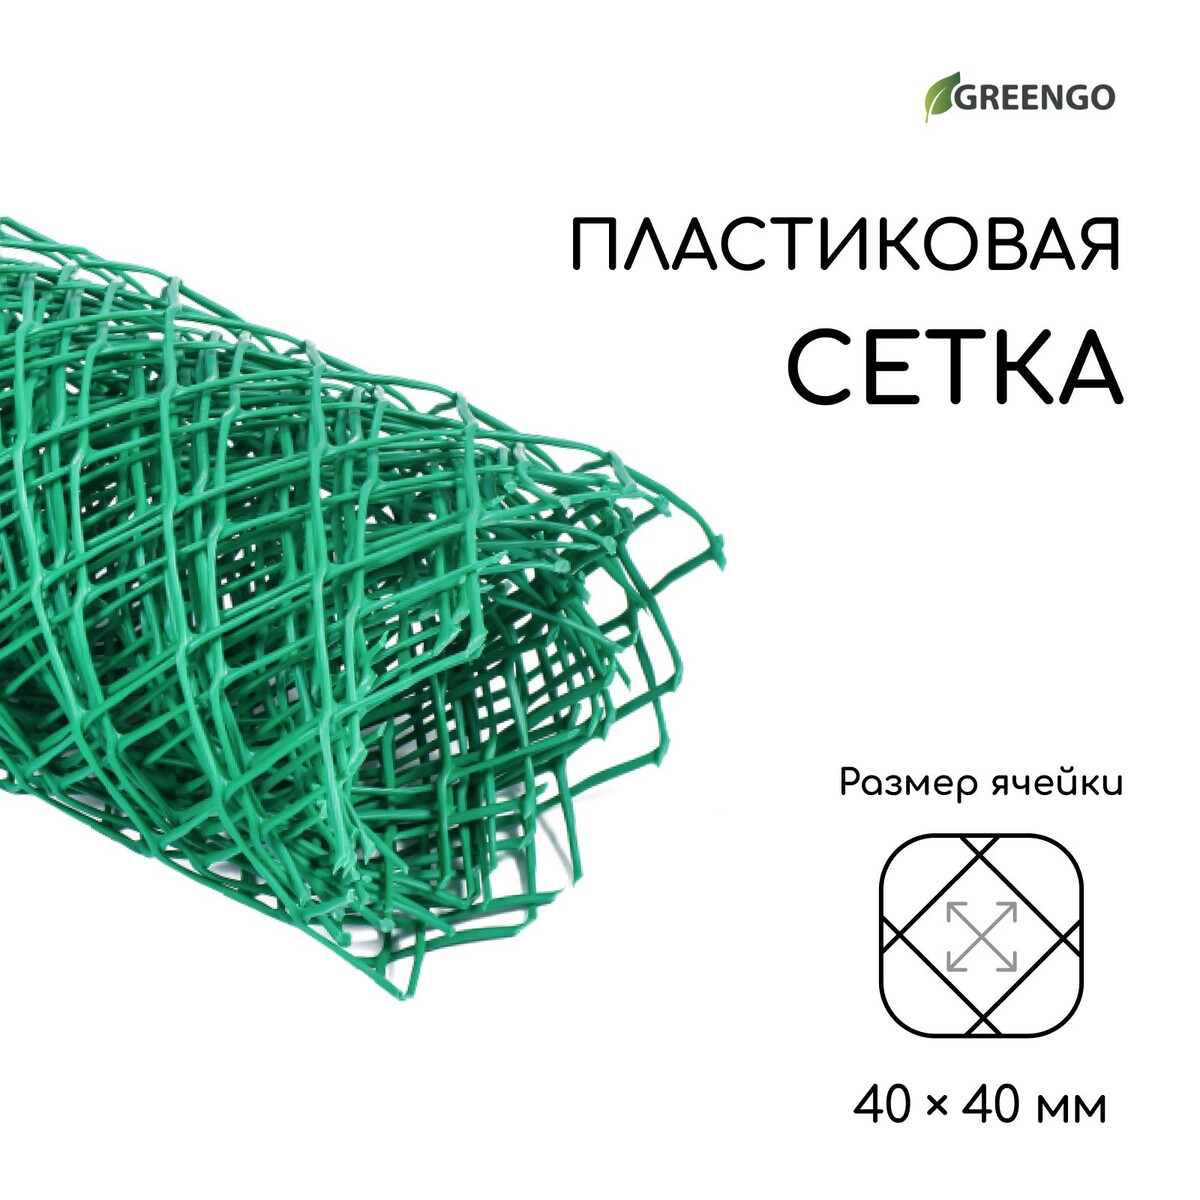 Сетка садовая, 0.5 × 5 м, ячейка ромб 40 × 40 мм, пластиковая, зеленая, greengo сетка садовая пластмасса ячейка 15 х 15 мм квадратная 100х2000 см серая зеленый луг удачная